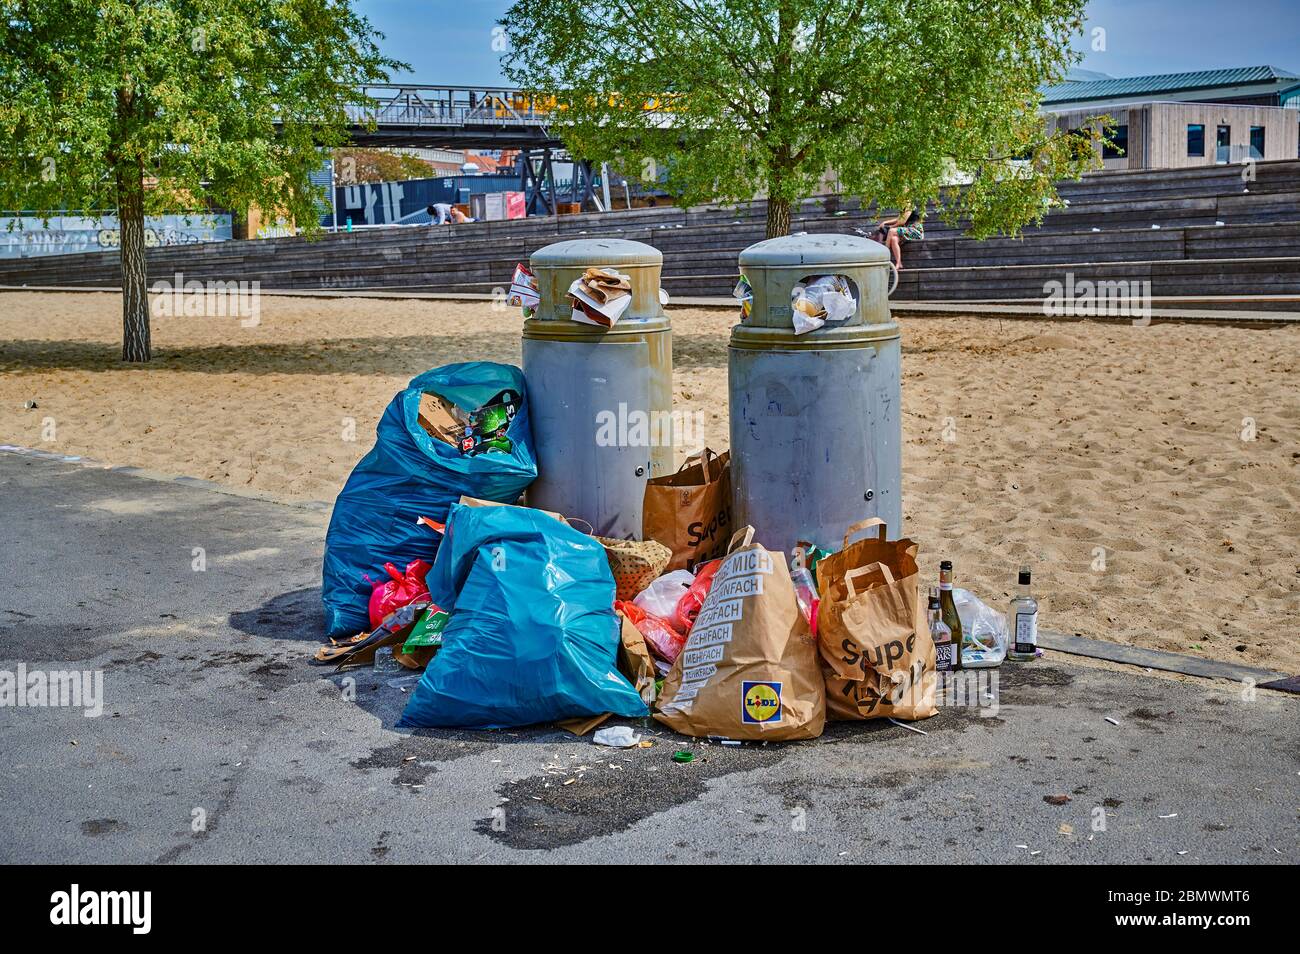 Berlin, Deutschland - 10. Mai 2020: Überfüllte Mülltonnen in einem öffentlichen Park in der Berliner Innenstadt. Stockfoto